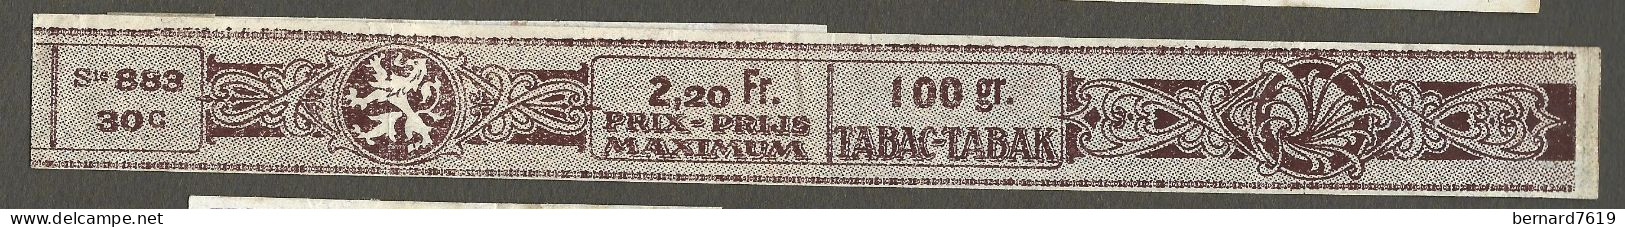 Timbre Taxe  - Tabac -belgique - - Prix Pruss Maximun - Annee 1870 - 1900 - Marken